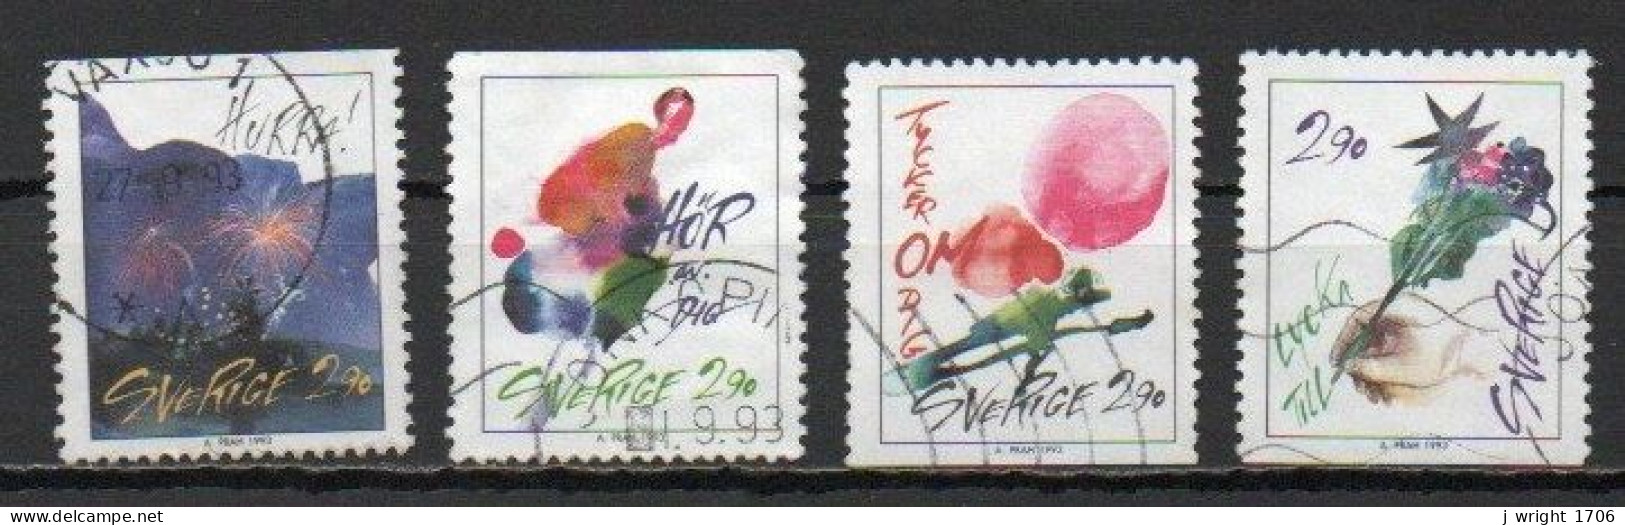 Sweden, 1993, Greetings Stamps, Set, USED - Oblitérés